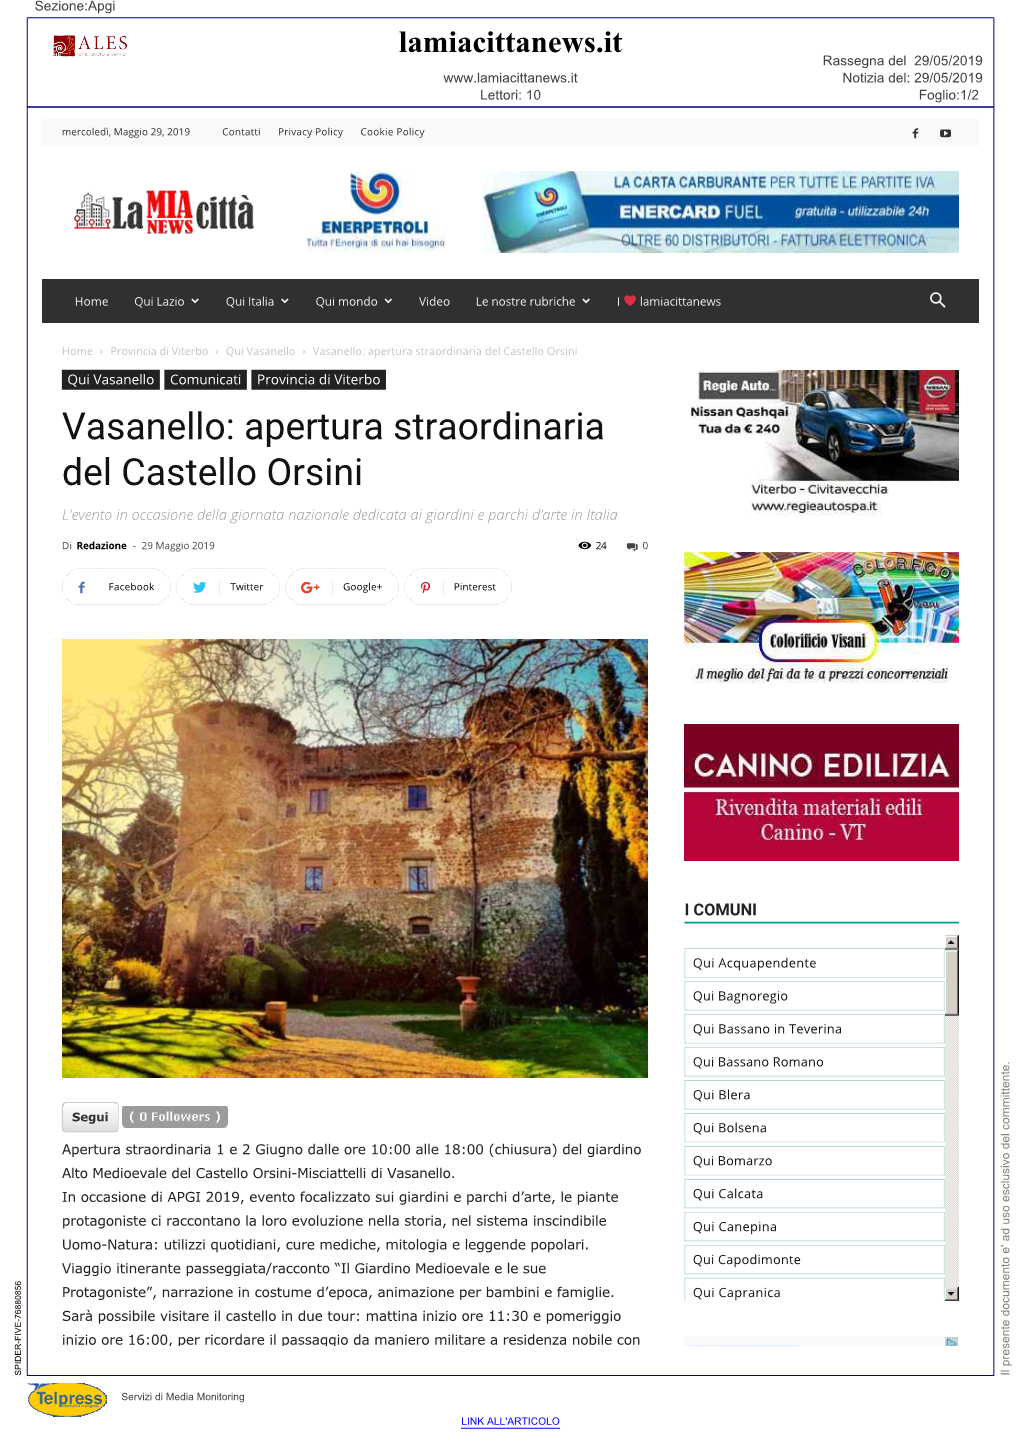 Vasanello: Apertura Straordinaria Del Castello Orsini